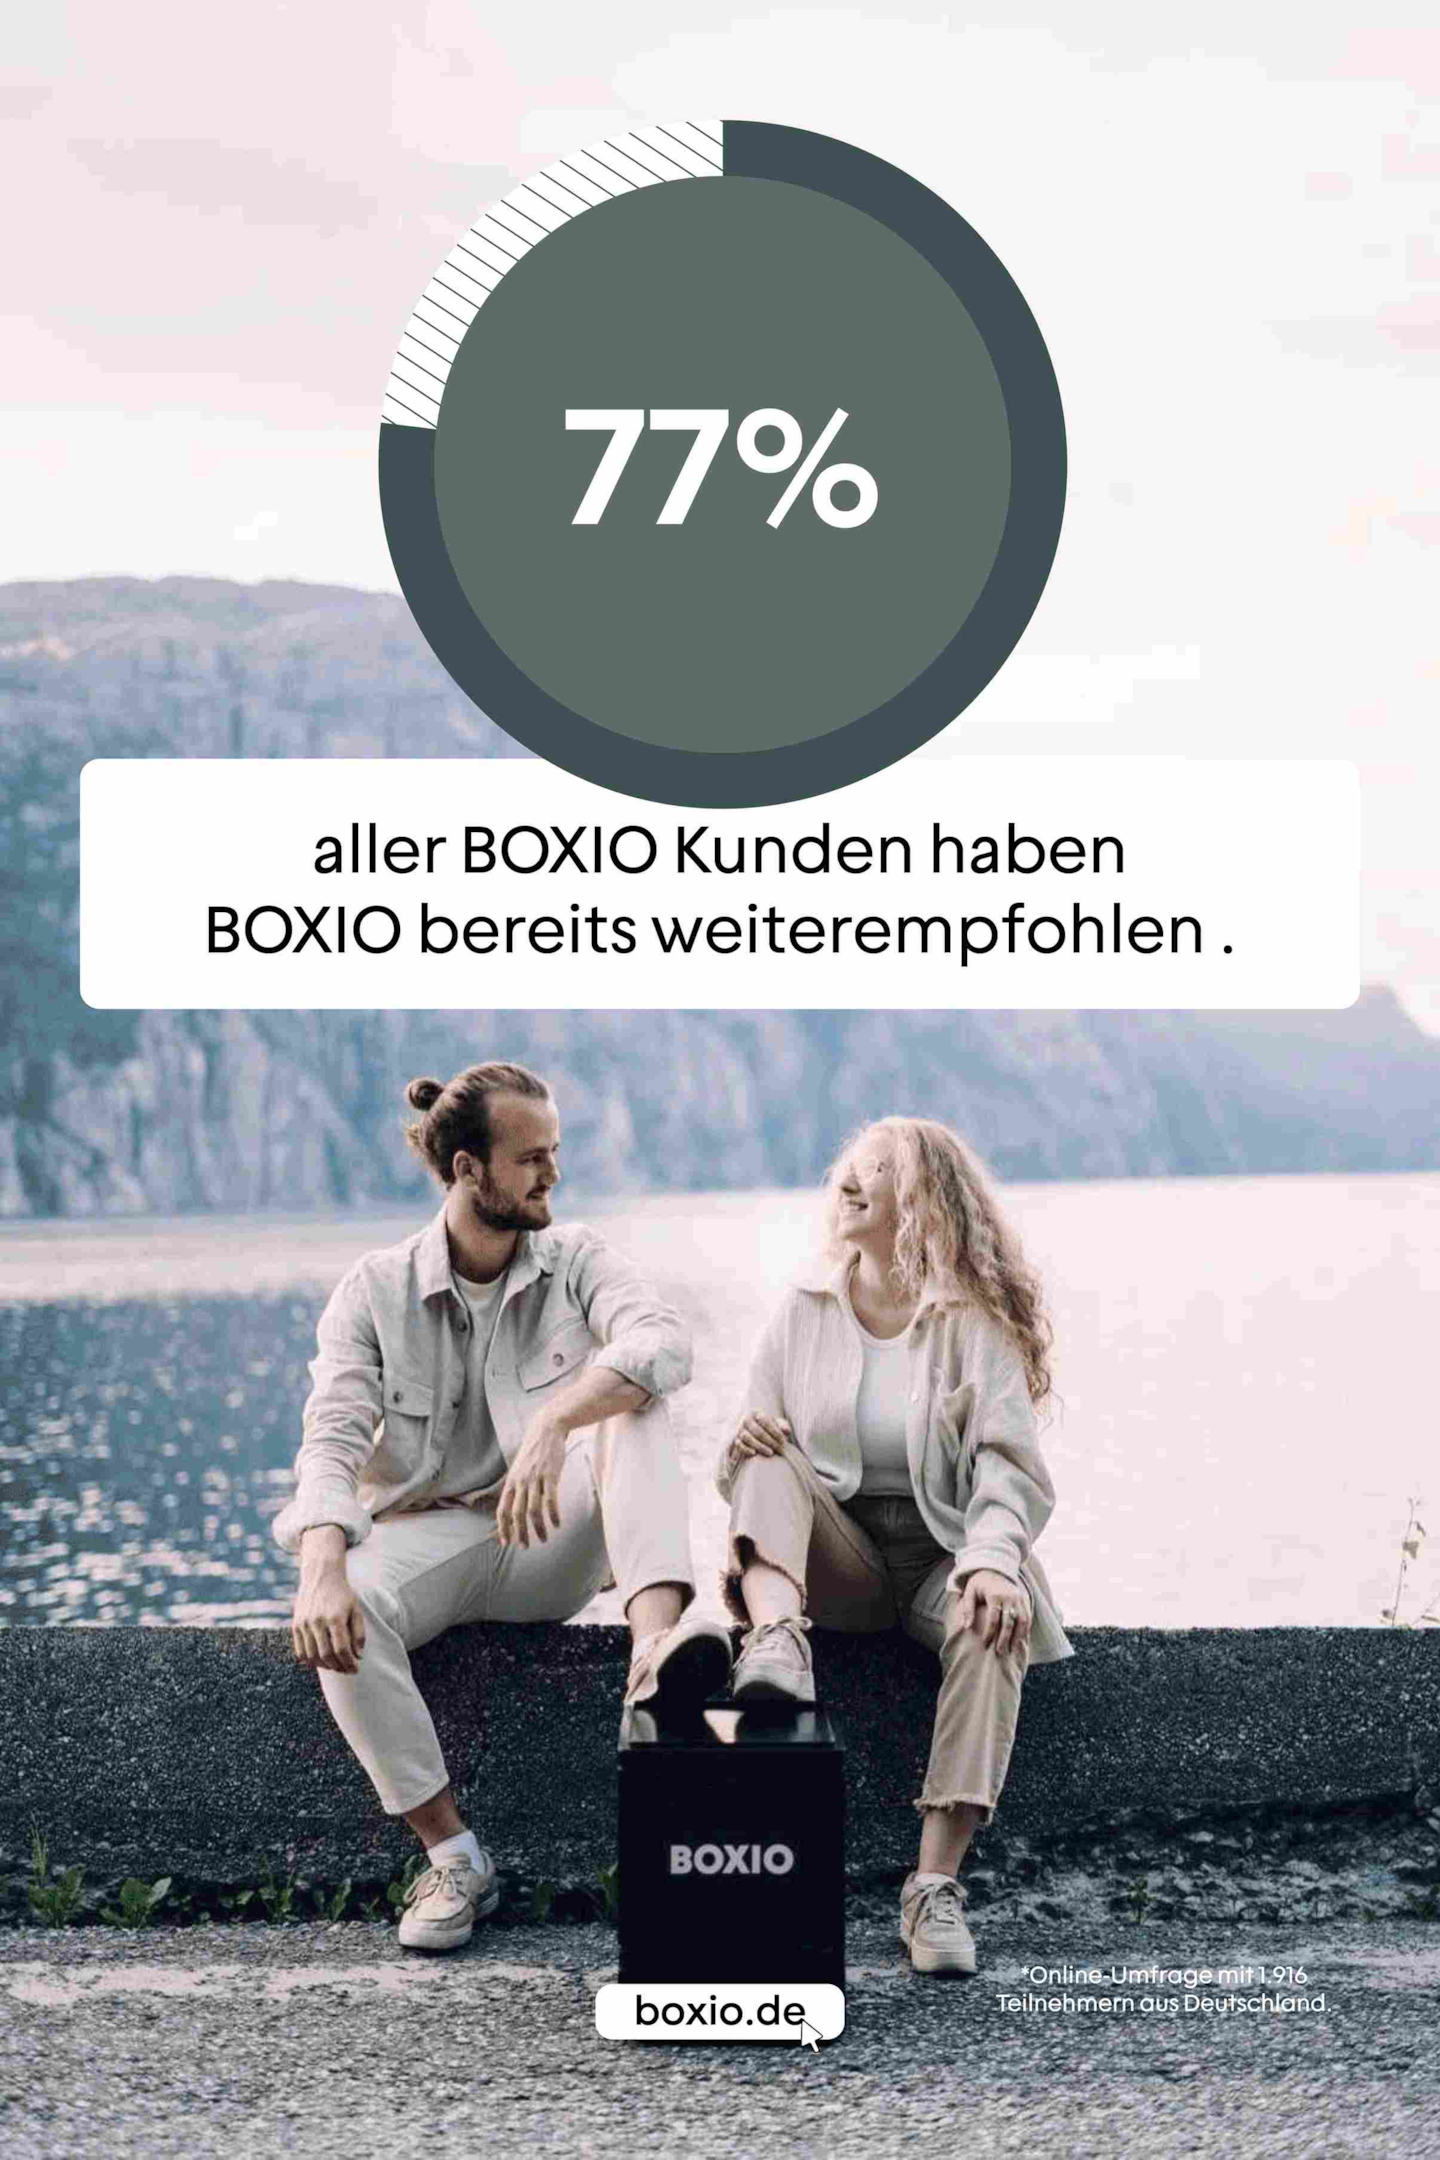 Par ved søen med BOXIO-toilet, tekst: 77% af alle BOXIO-kunder har allerede anbefalet BOXIO til andre